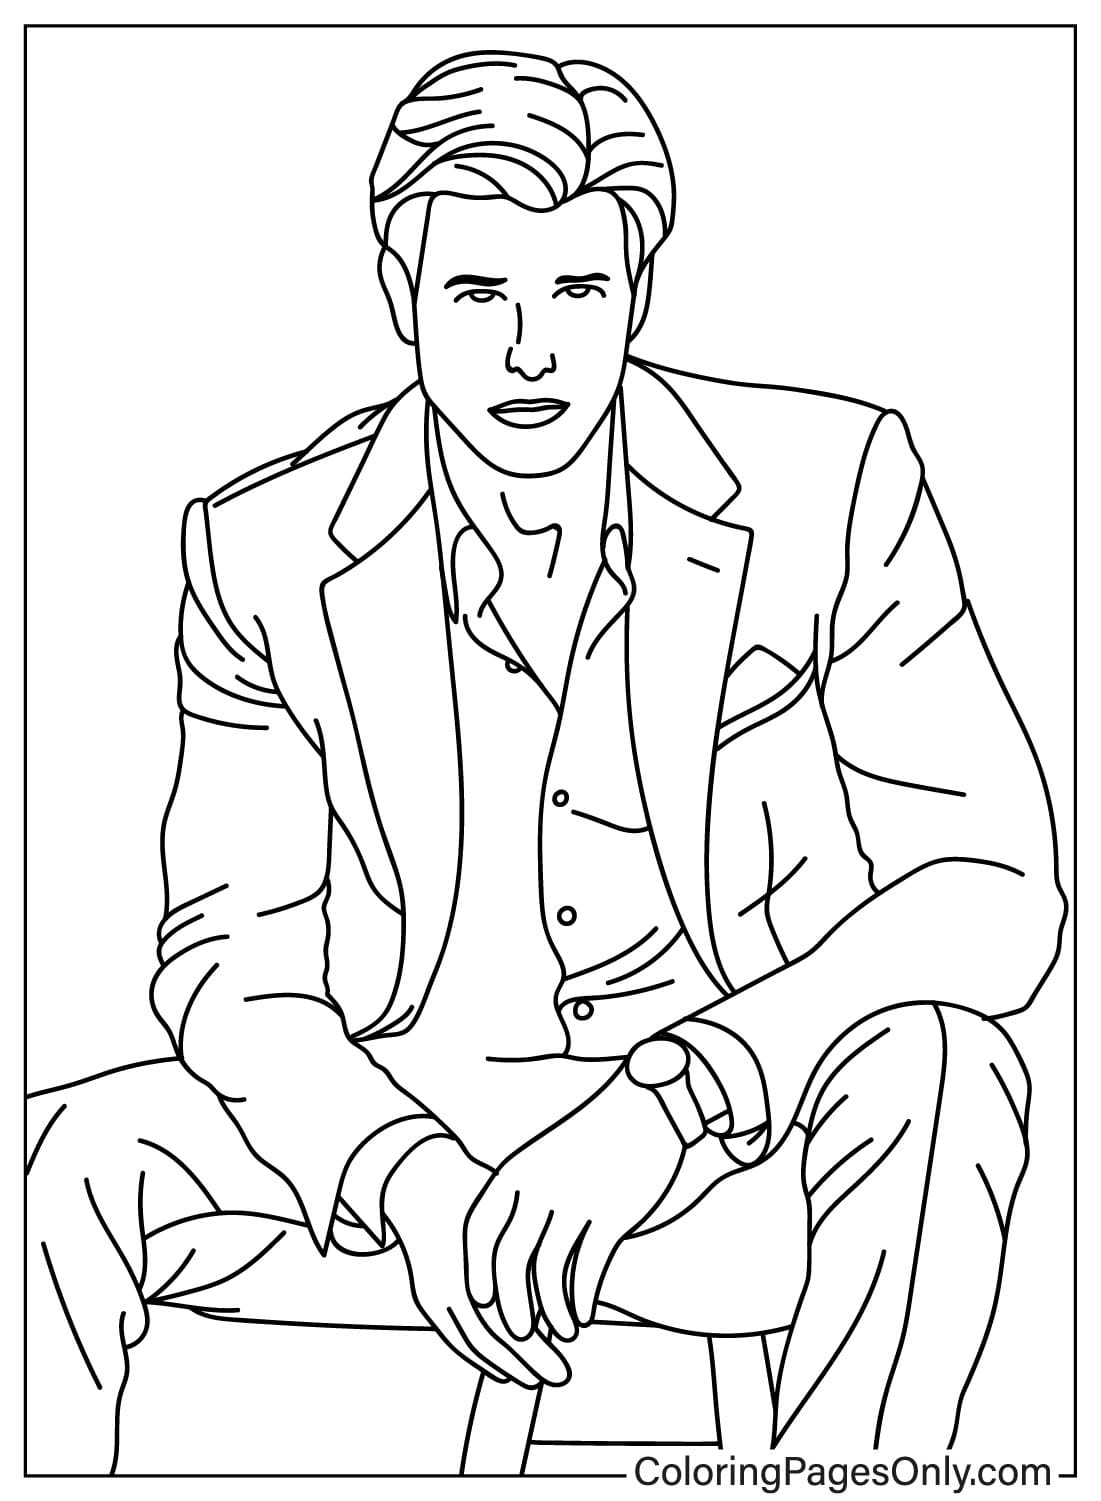 Coloriage gratuit de Tom Cruise de Tom Cruise